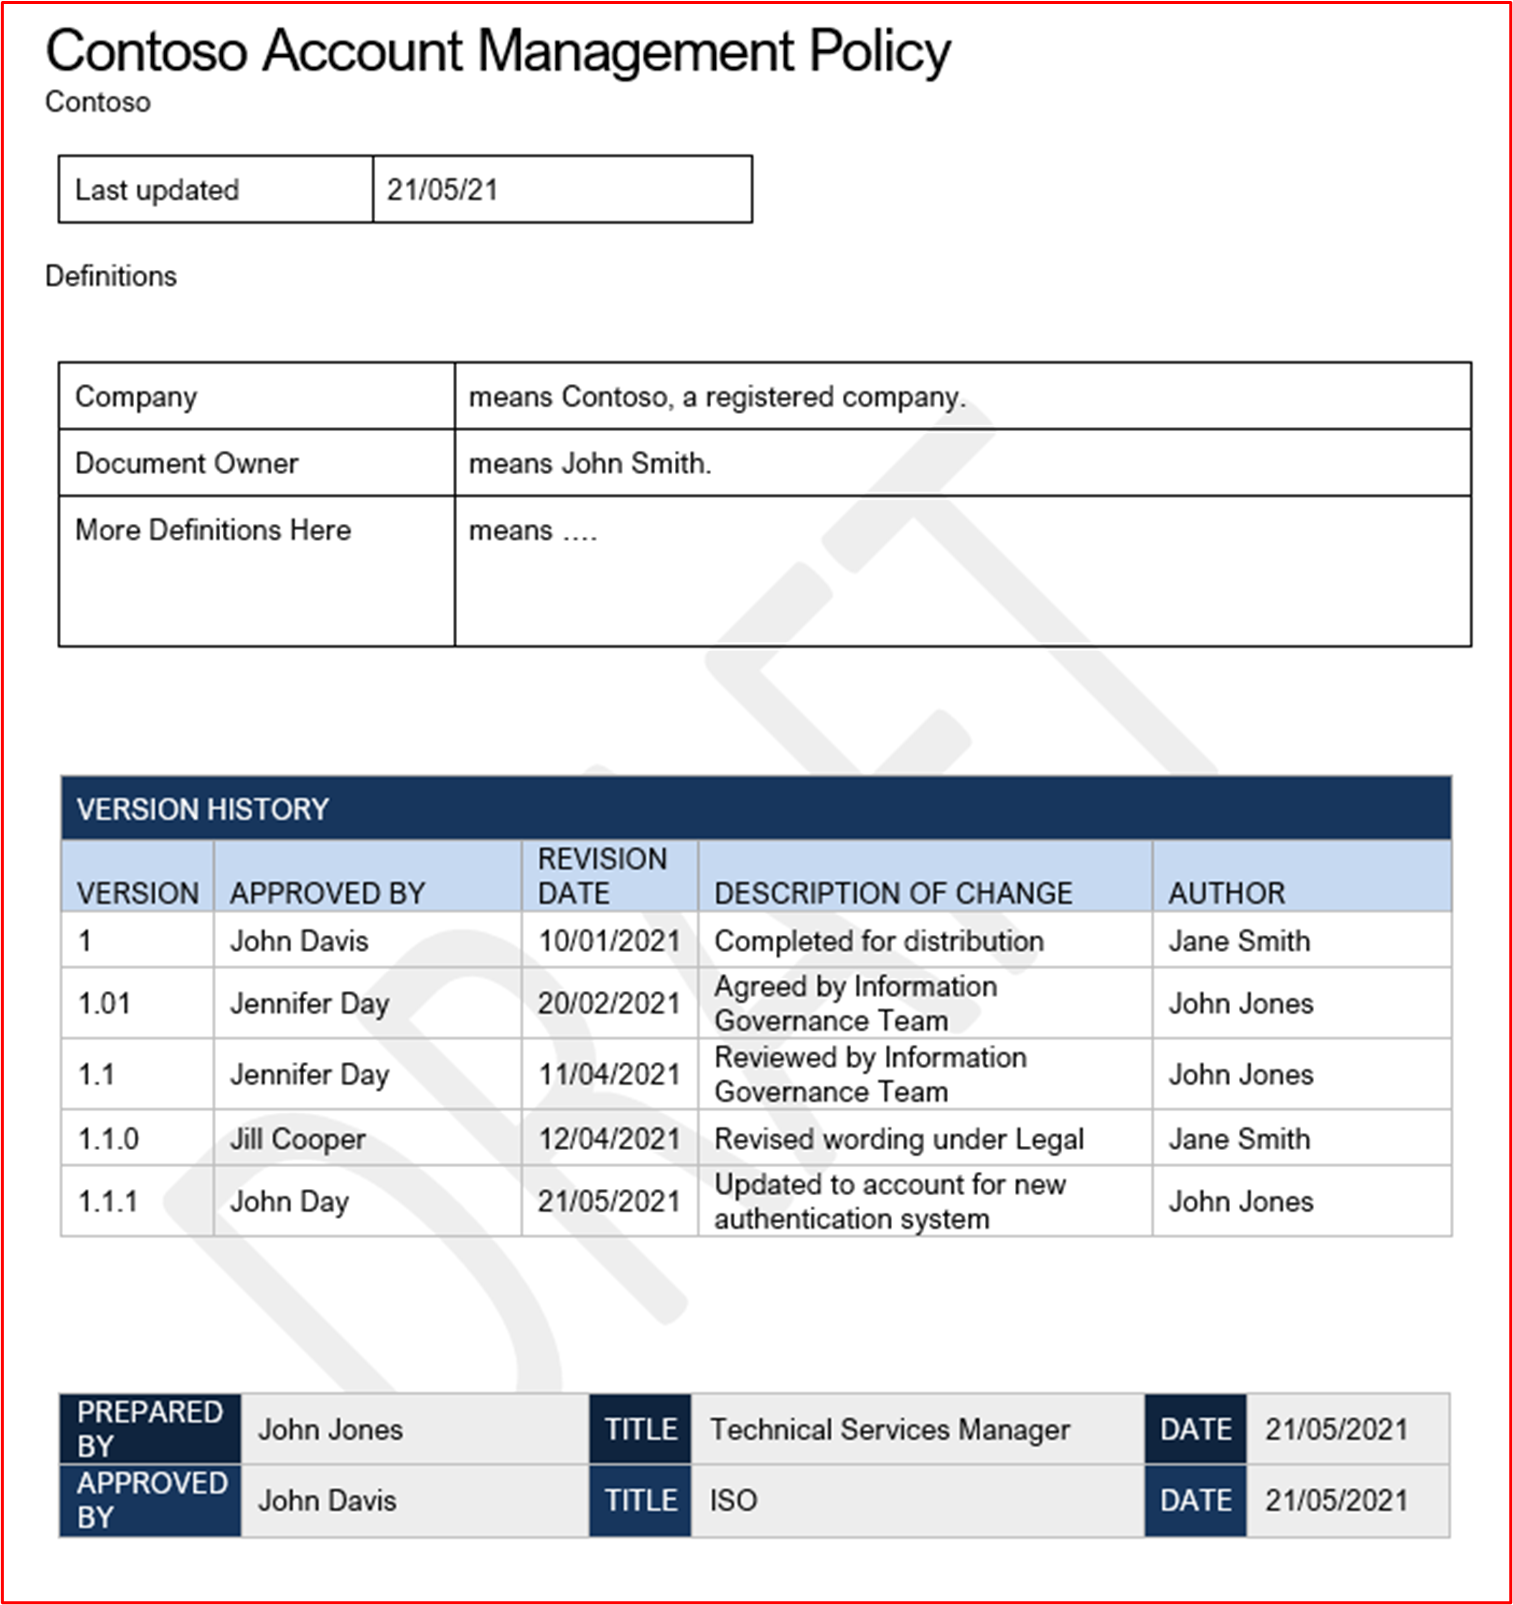 屏幕截图显示了 Contoso 的帐户管理策略示例。